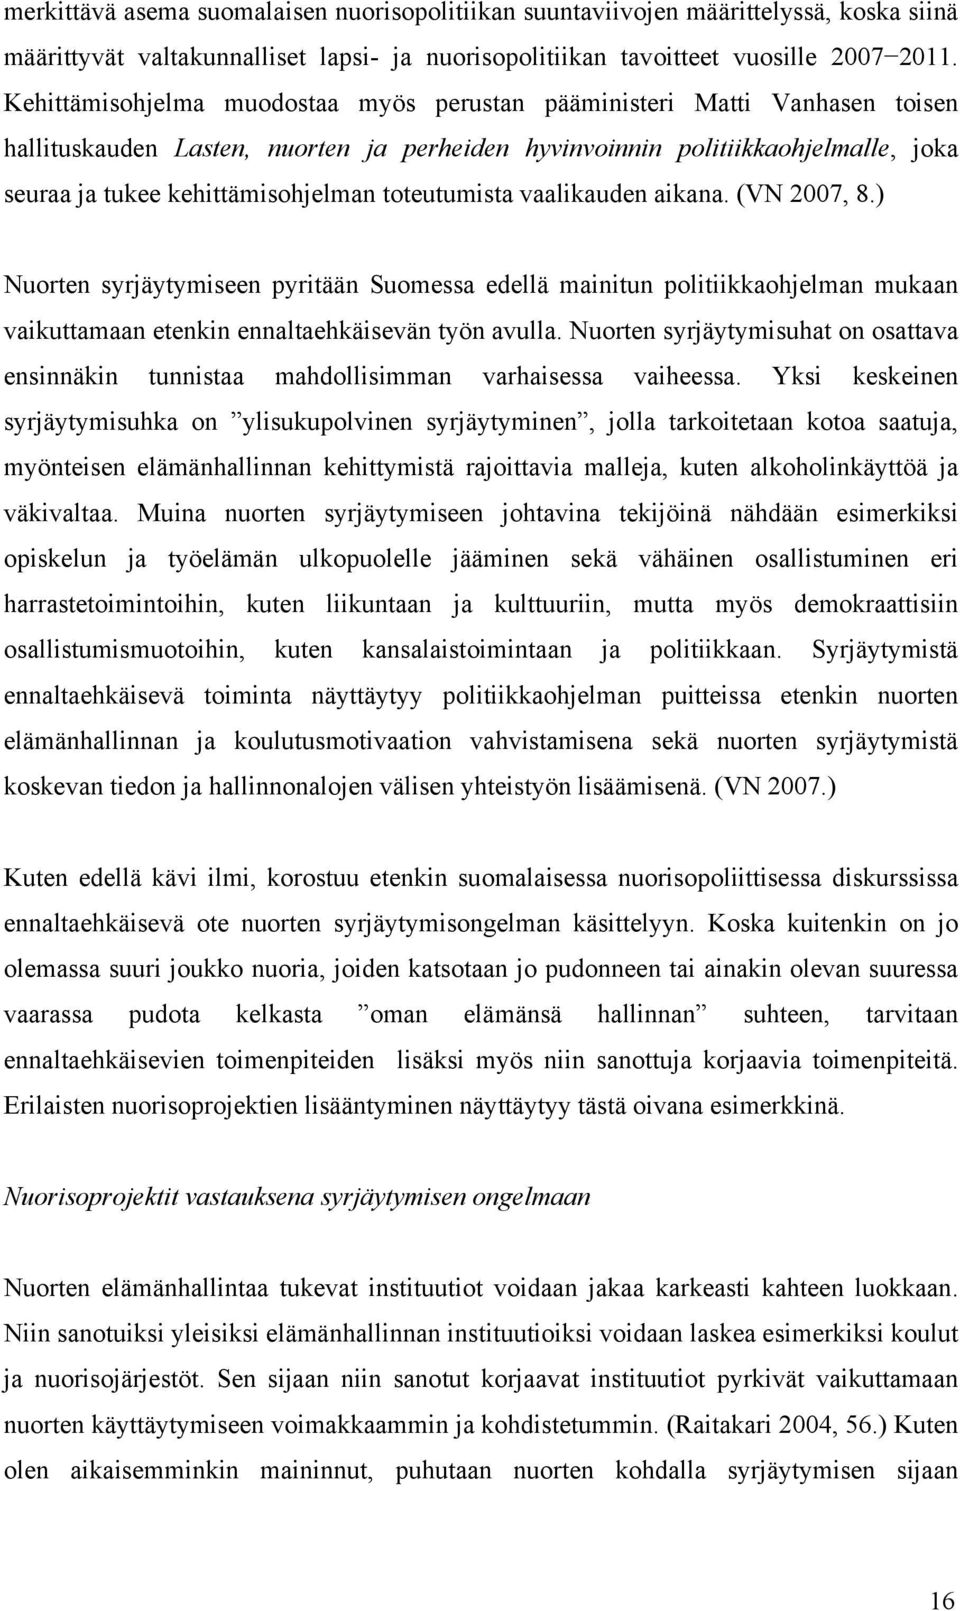 toteutumista vaalikauden aikana. (VN 2007, 8.) Nuorten syrjäytymiseen pyritään Suomessa edellä mainitun politiikkaohjelman mukaan vaikuttamaan etenkin ennaltaehkäisevän työn avulla.